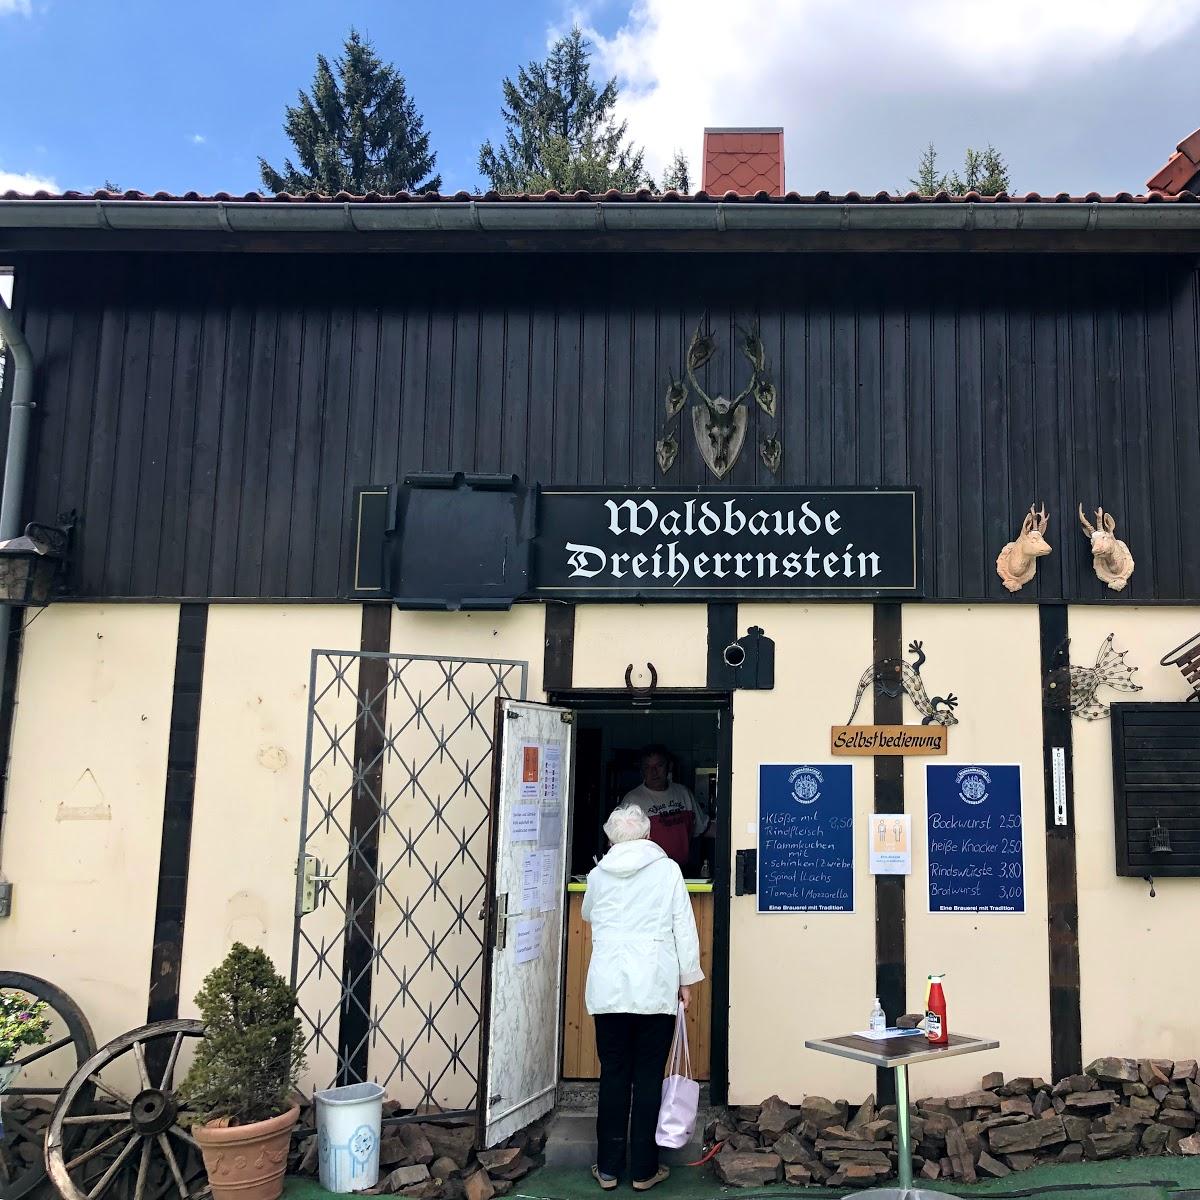 Restaurant "Großer Dreiherrenstein - Waldbaude" in  Frauenwald